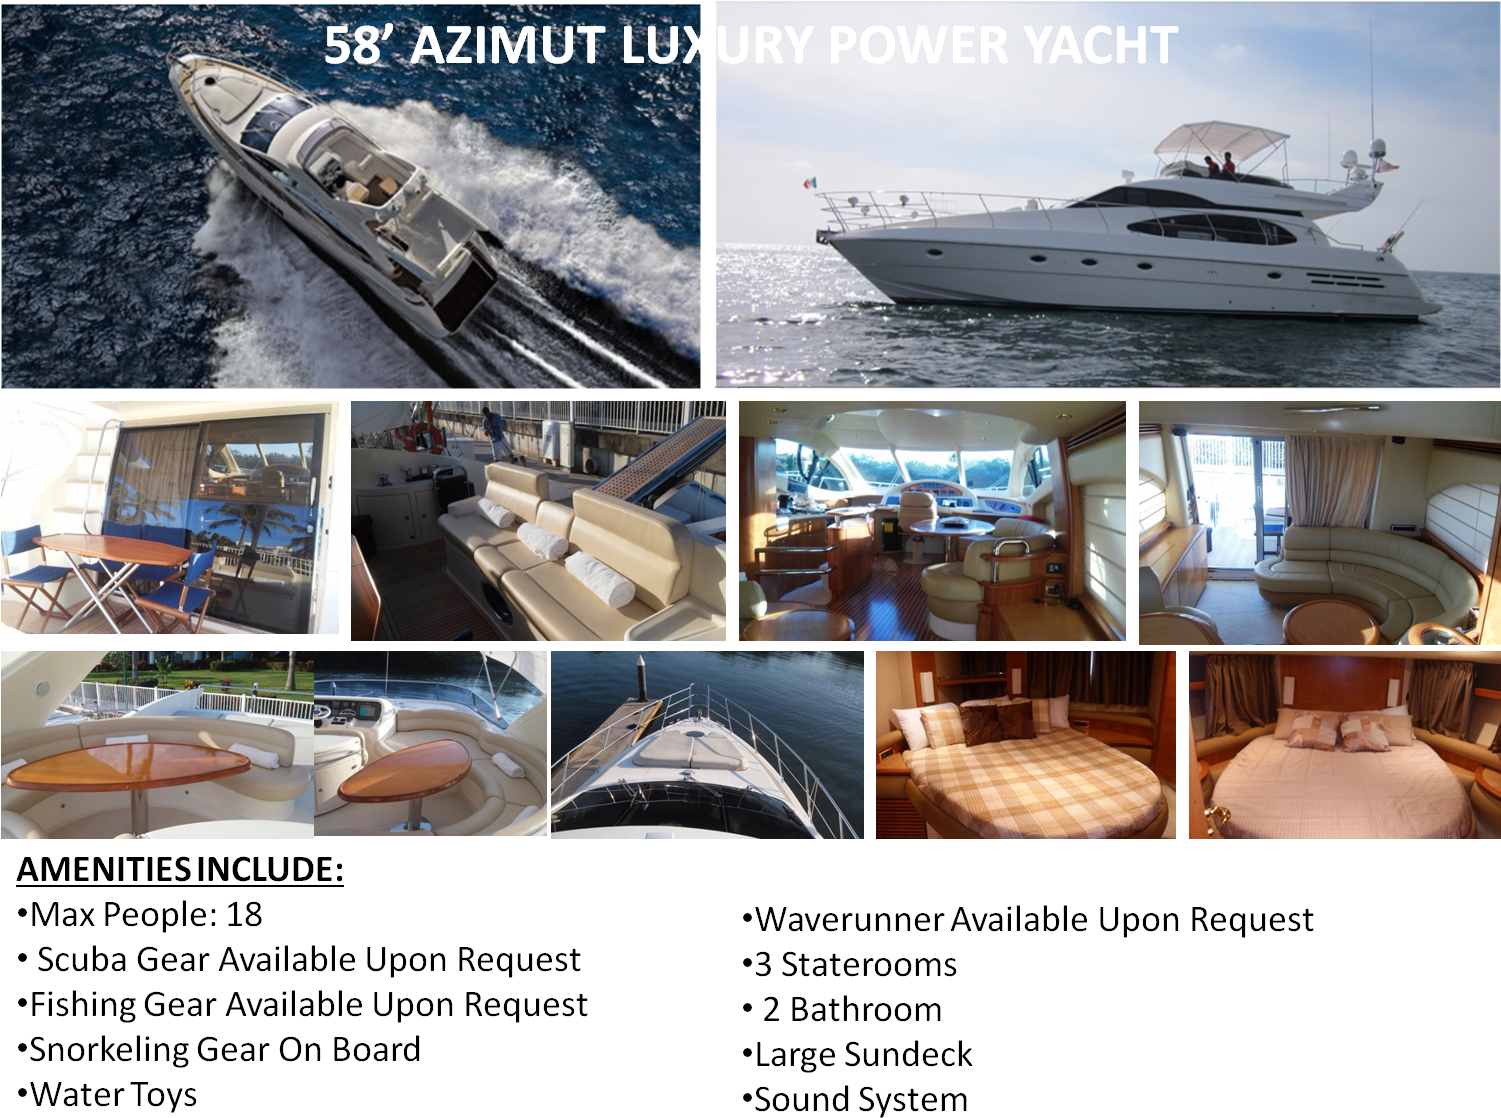 58' Azimut Luxury Power Yacht - Azimut (1510x1140), Png Download